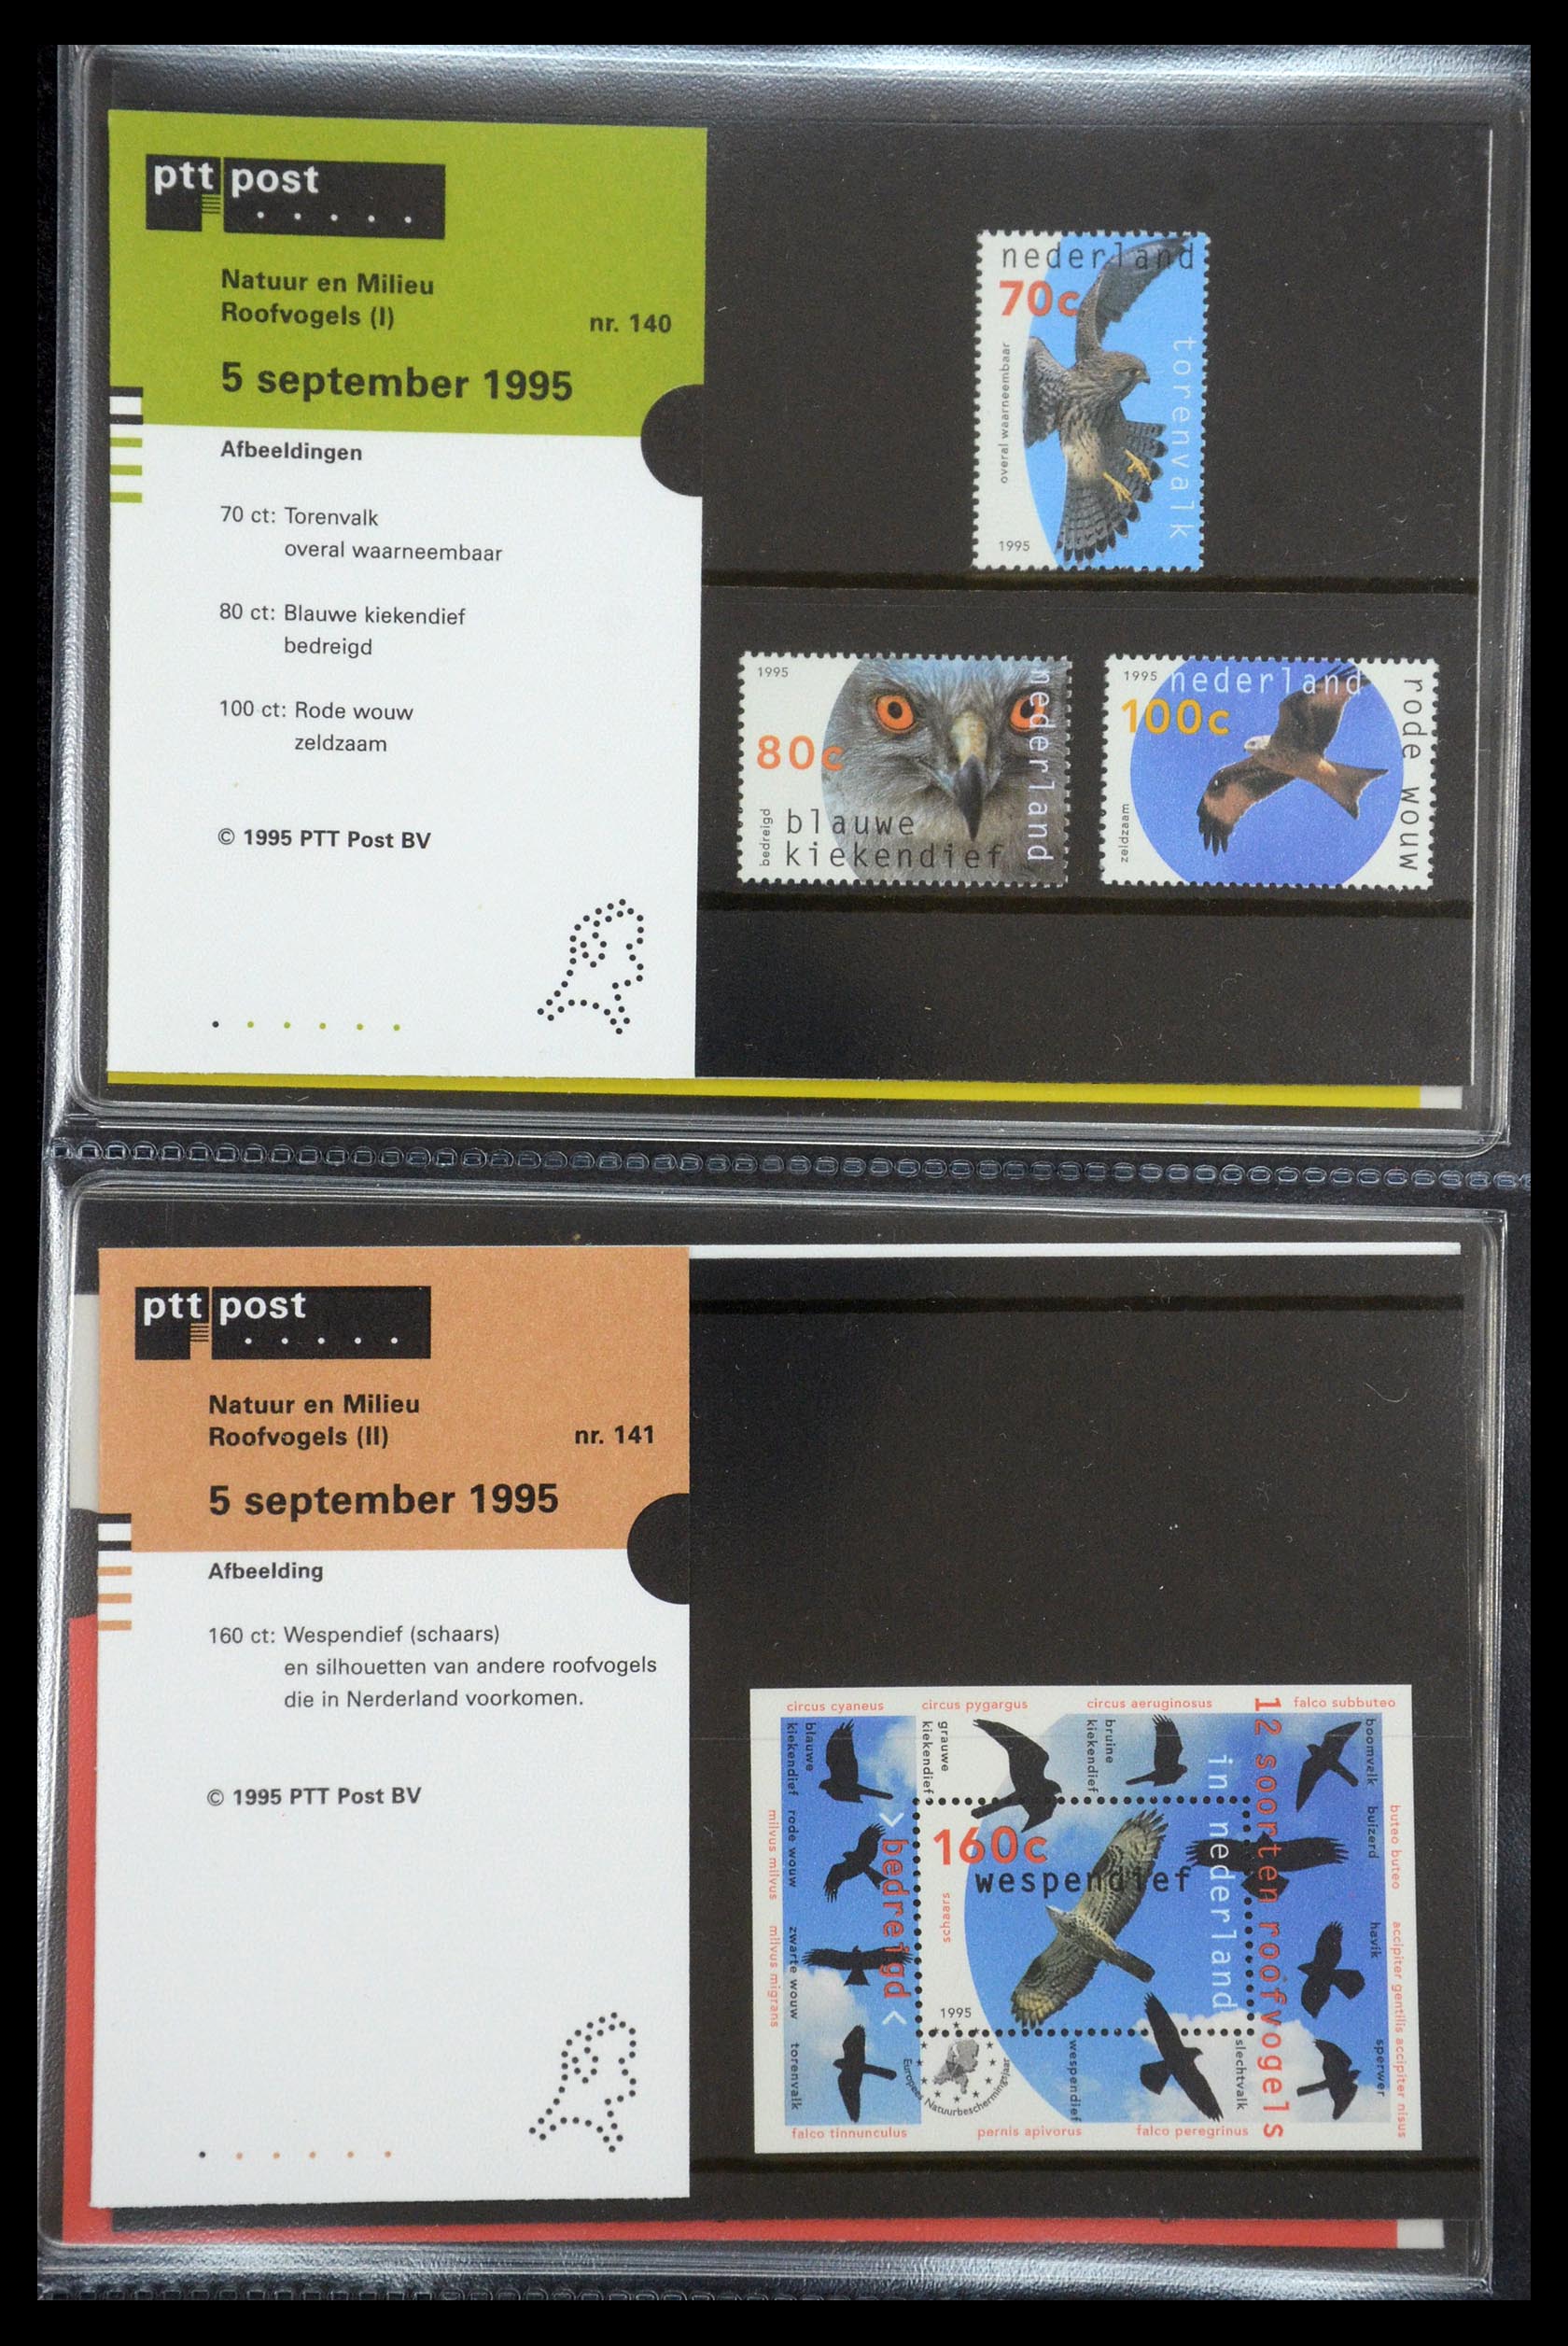 35187 072 - Stamp Collection 35187 Netherlands PTT presentation packs 1982-2019!